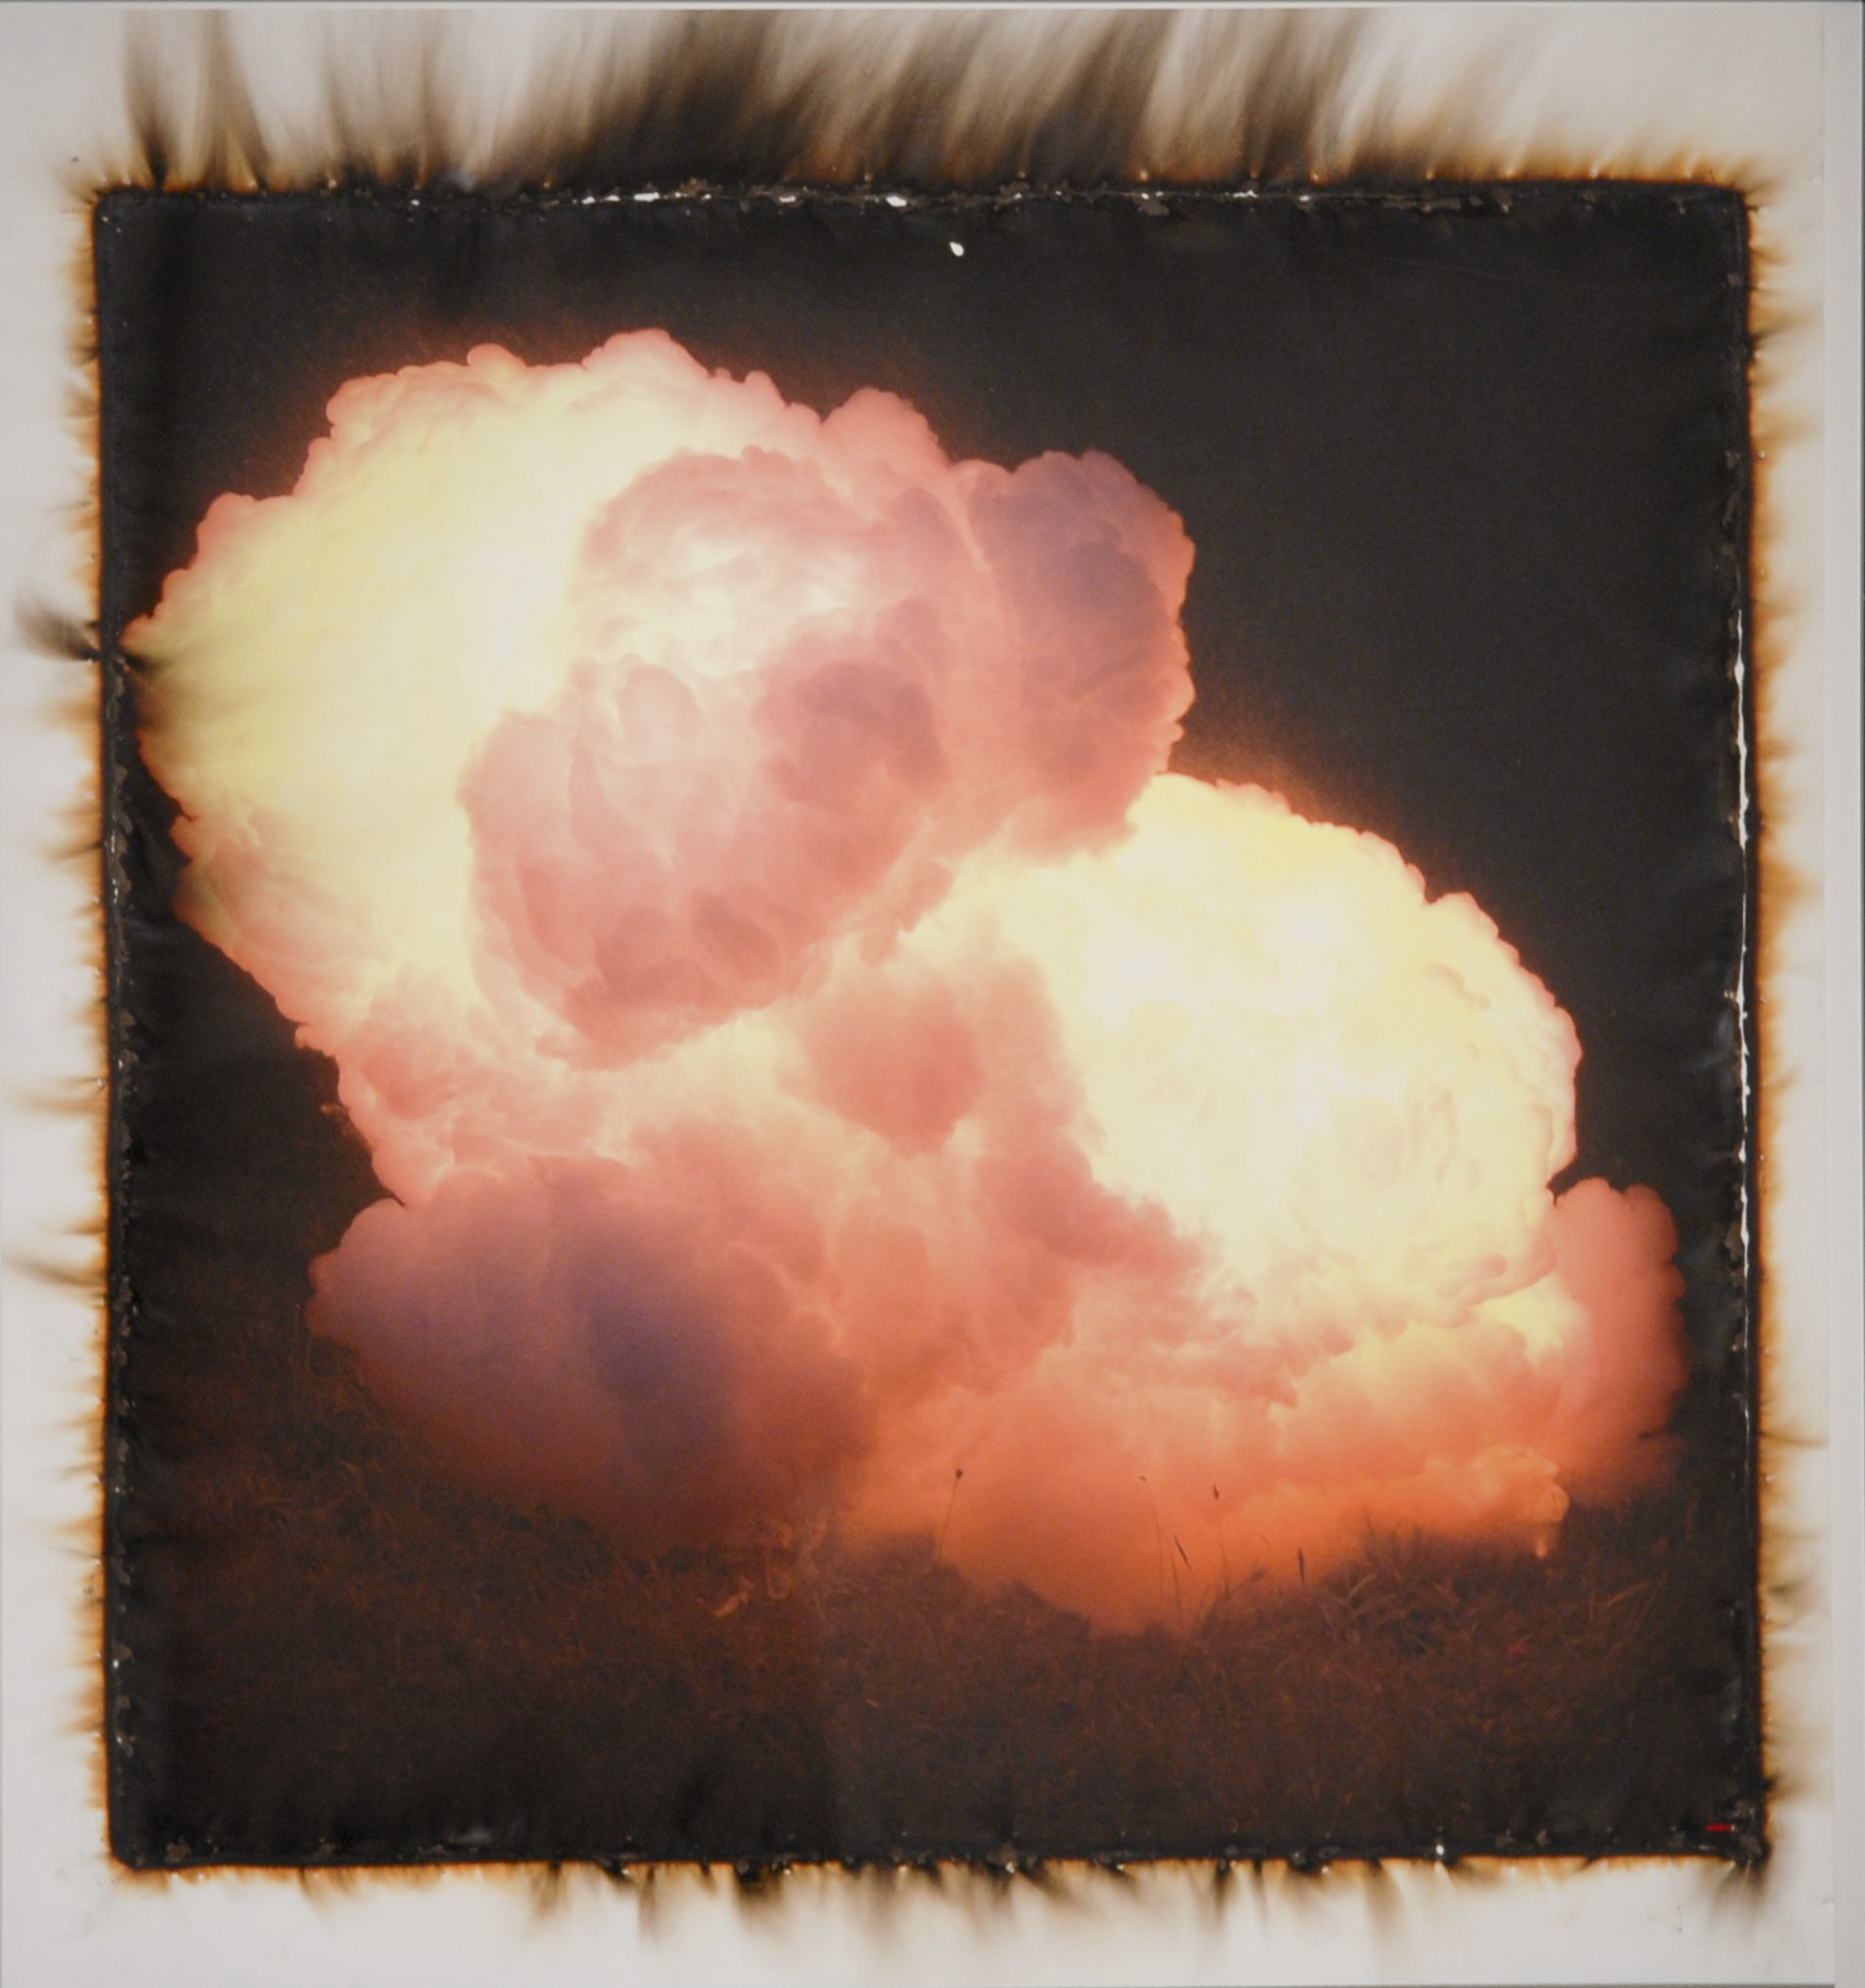 Detonation (During) 2/2 by Jonathon Hexner